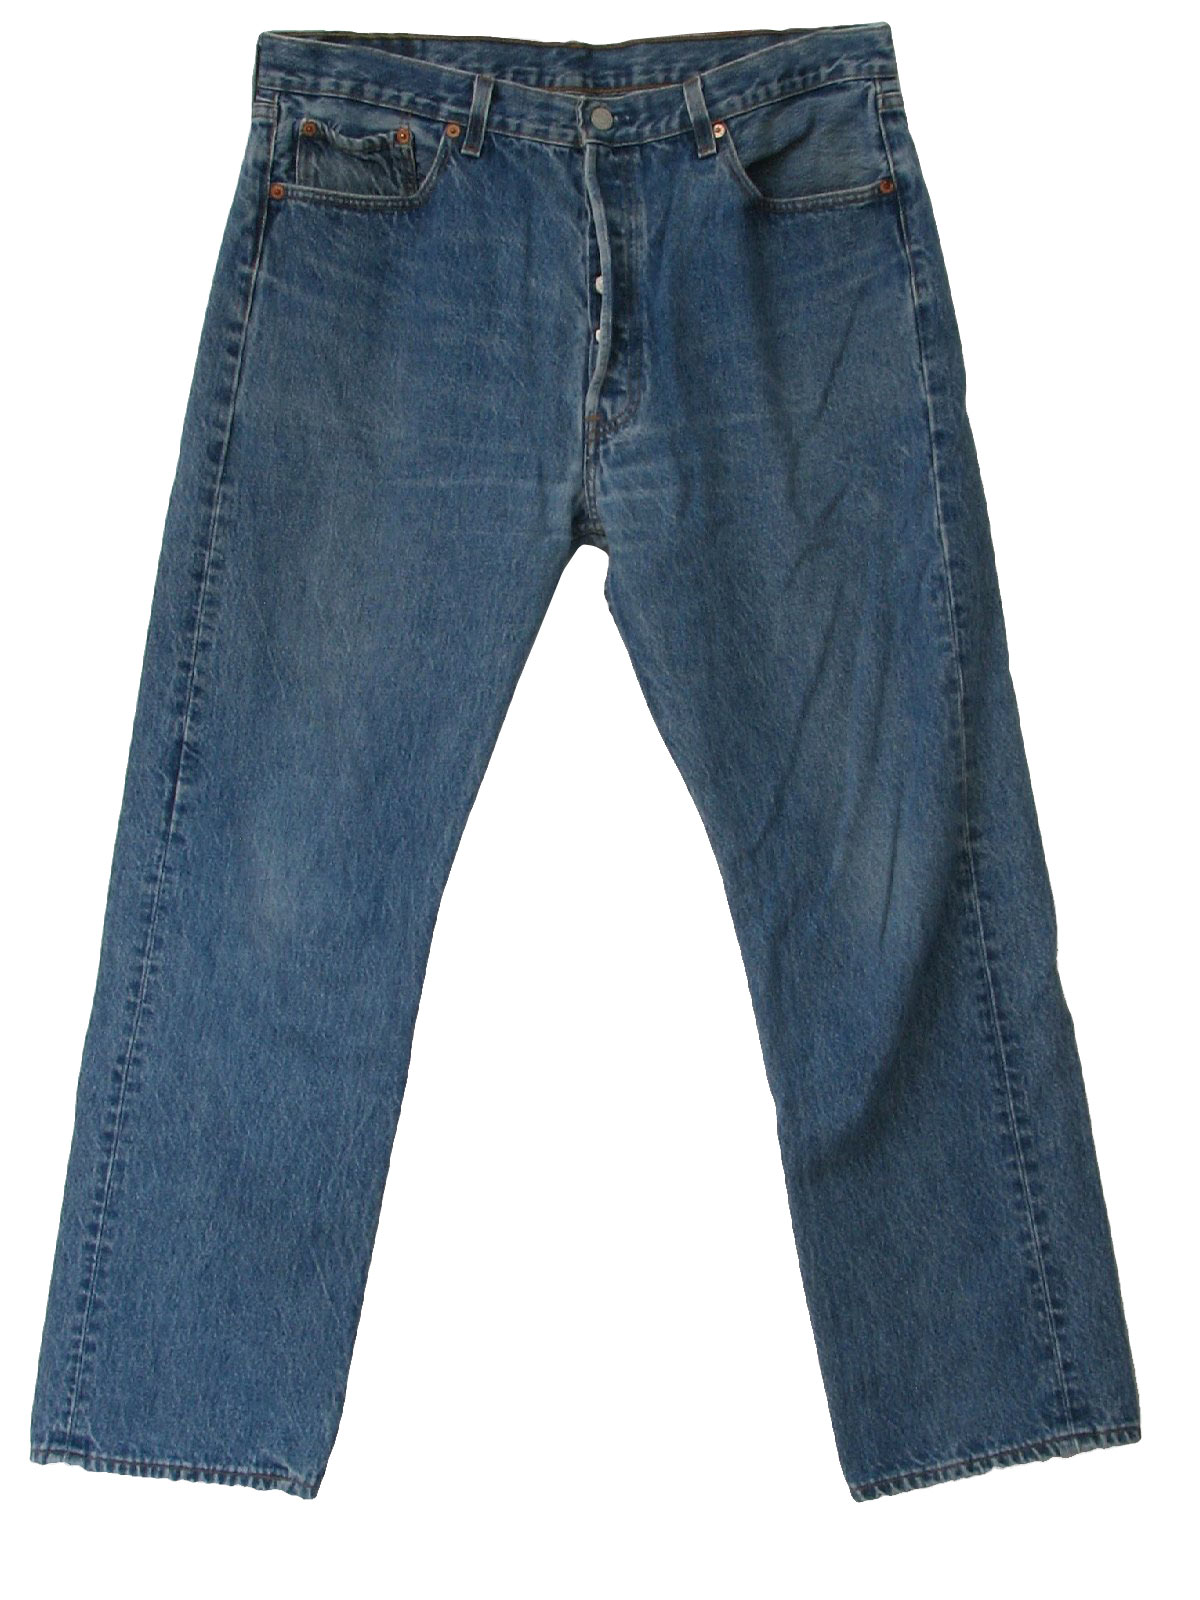 Retro 80s Pants (Levis) : 80s -Levis- Mens light blue denim cotton ...